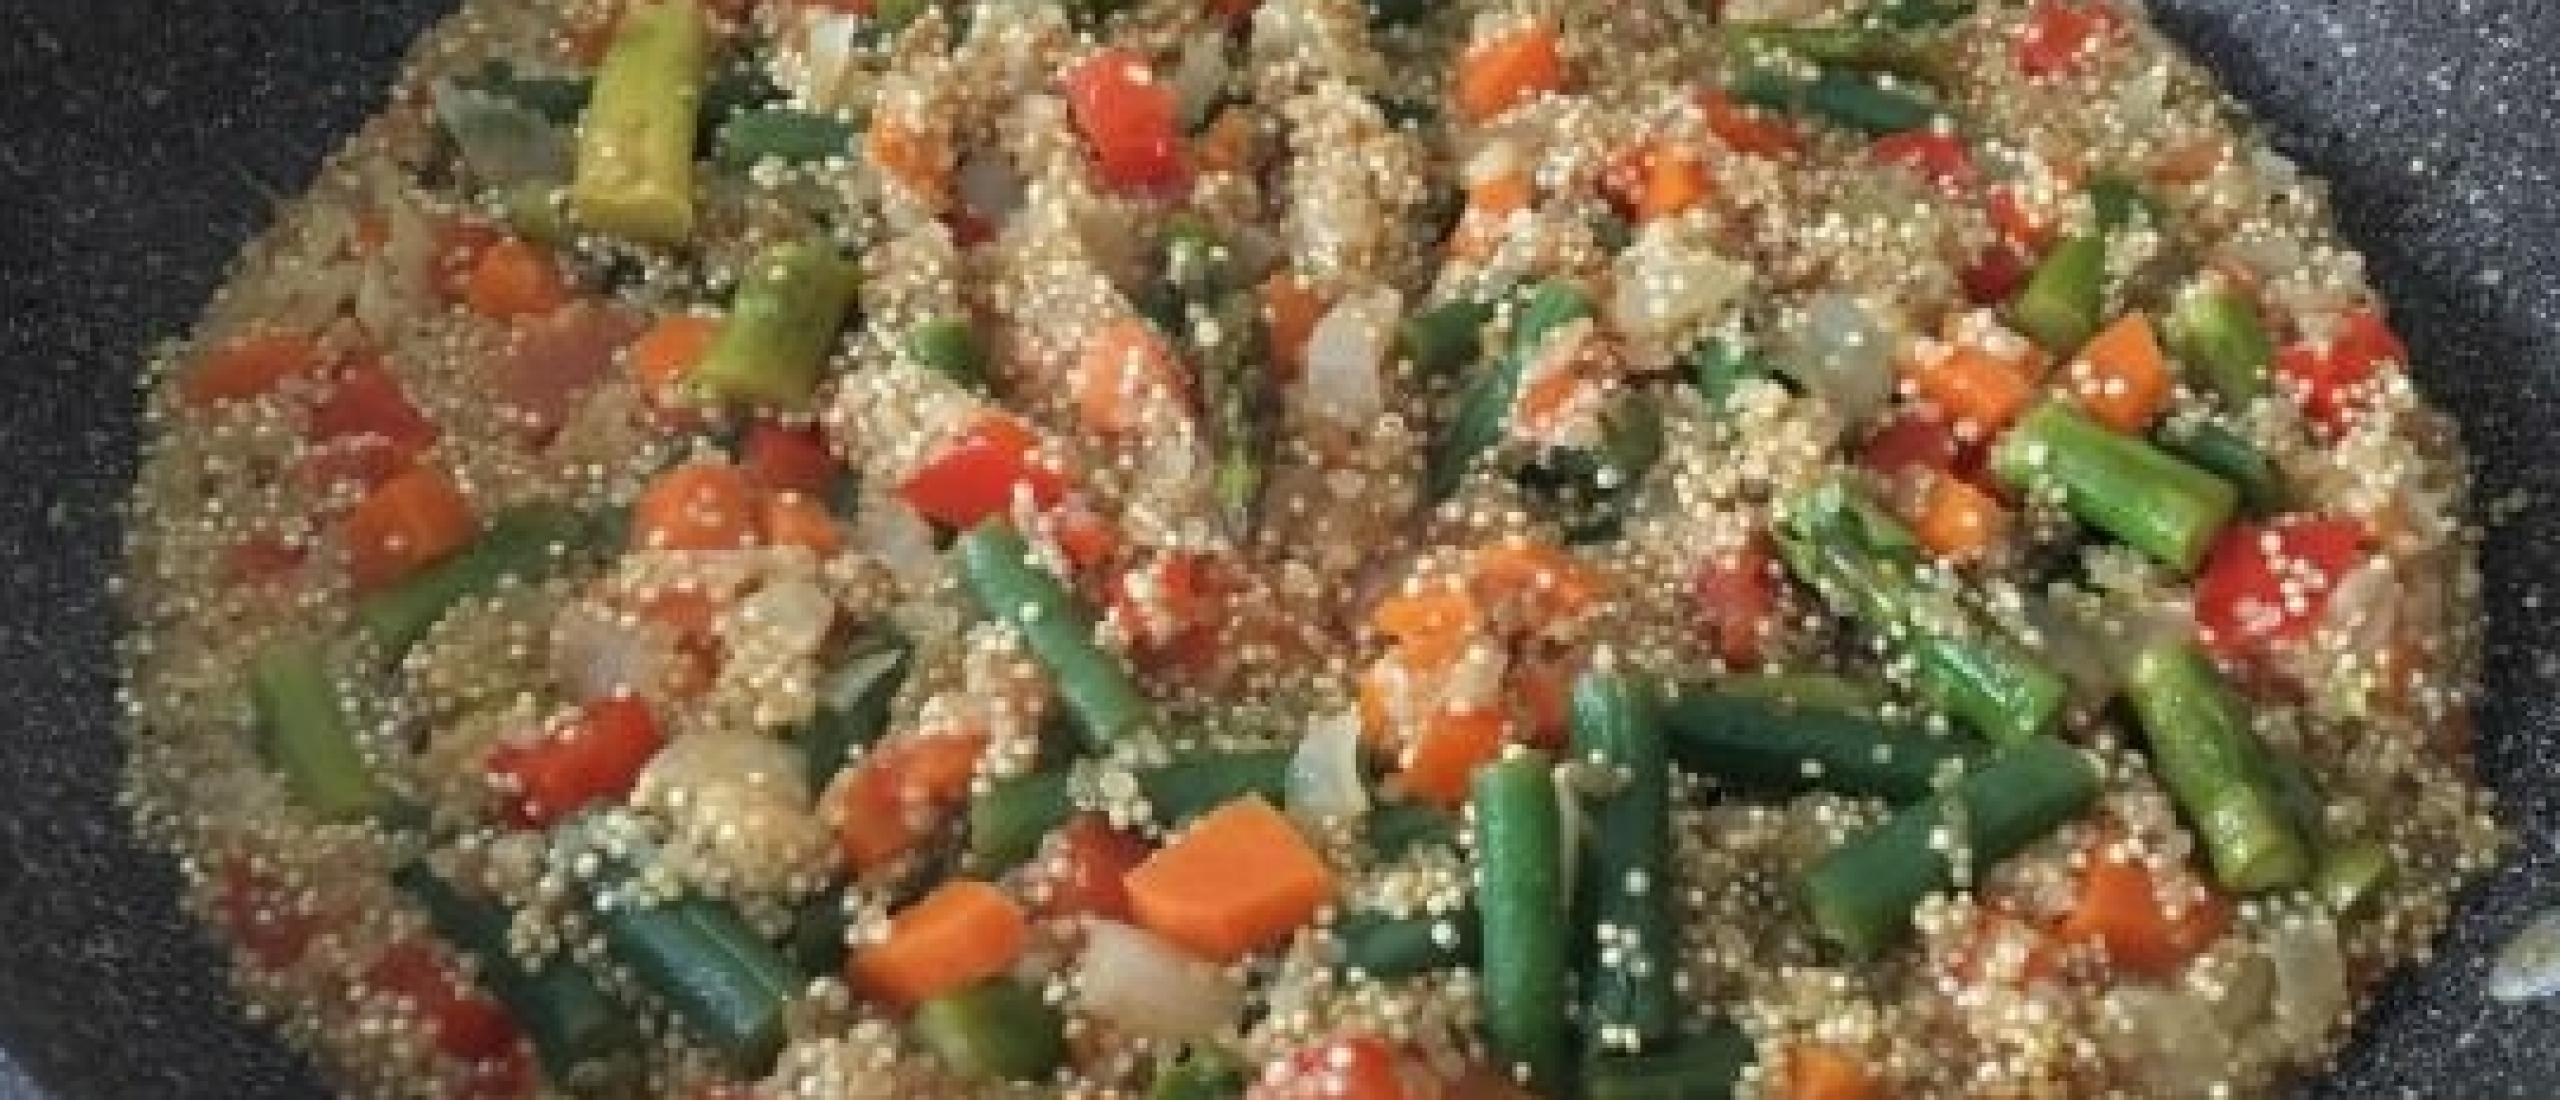 vegetarische paella met quinao